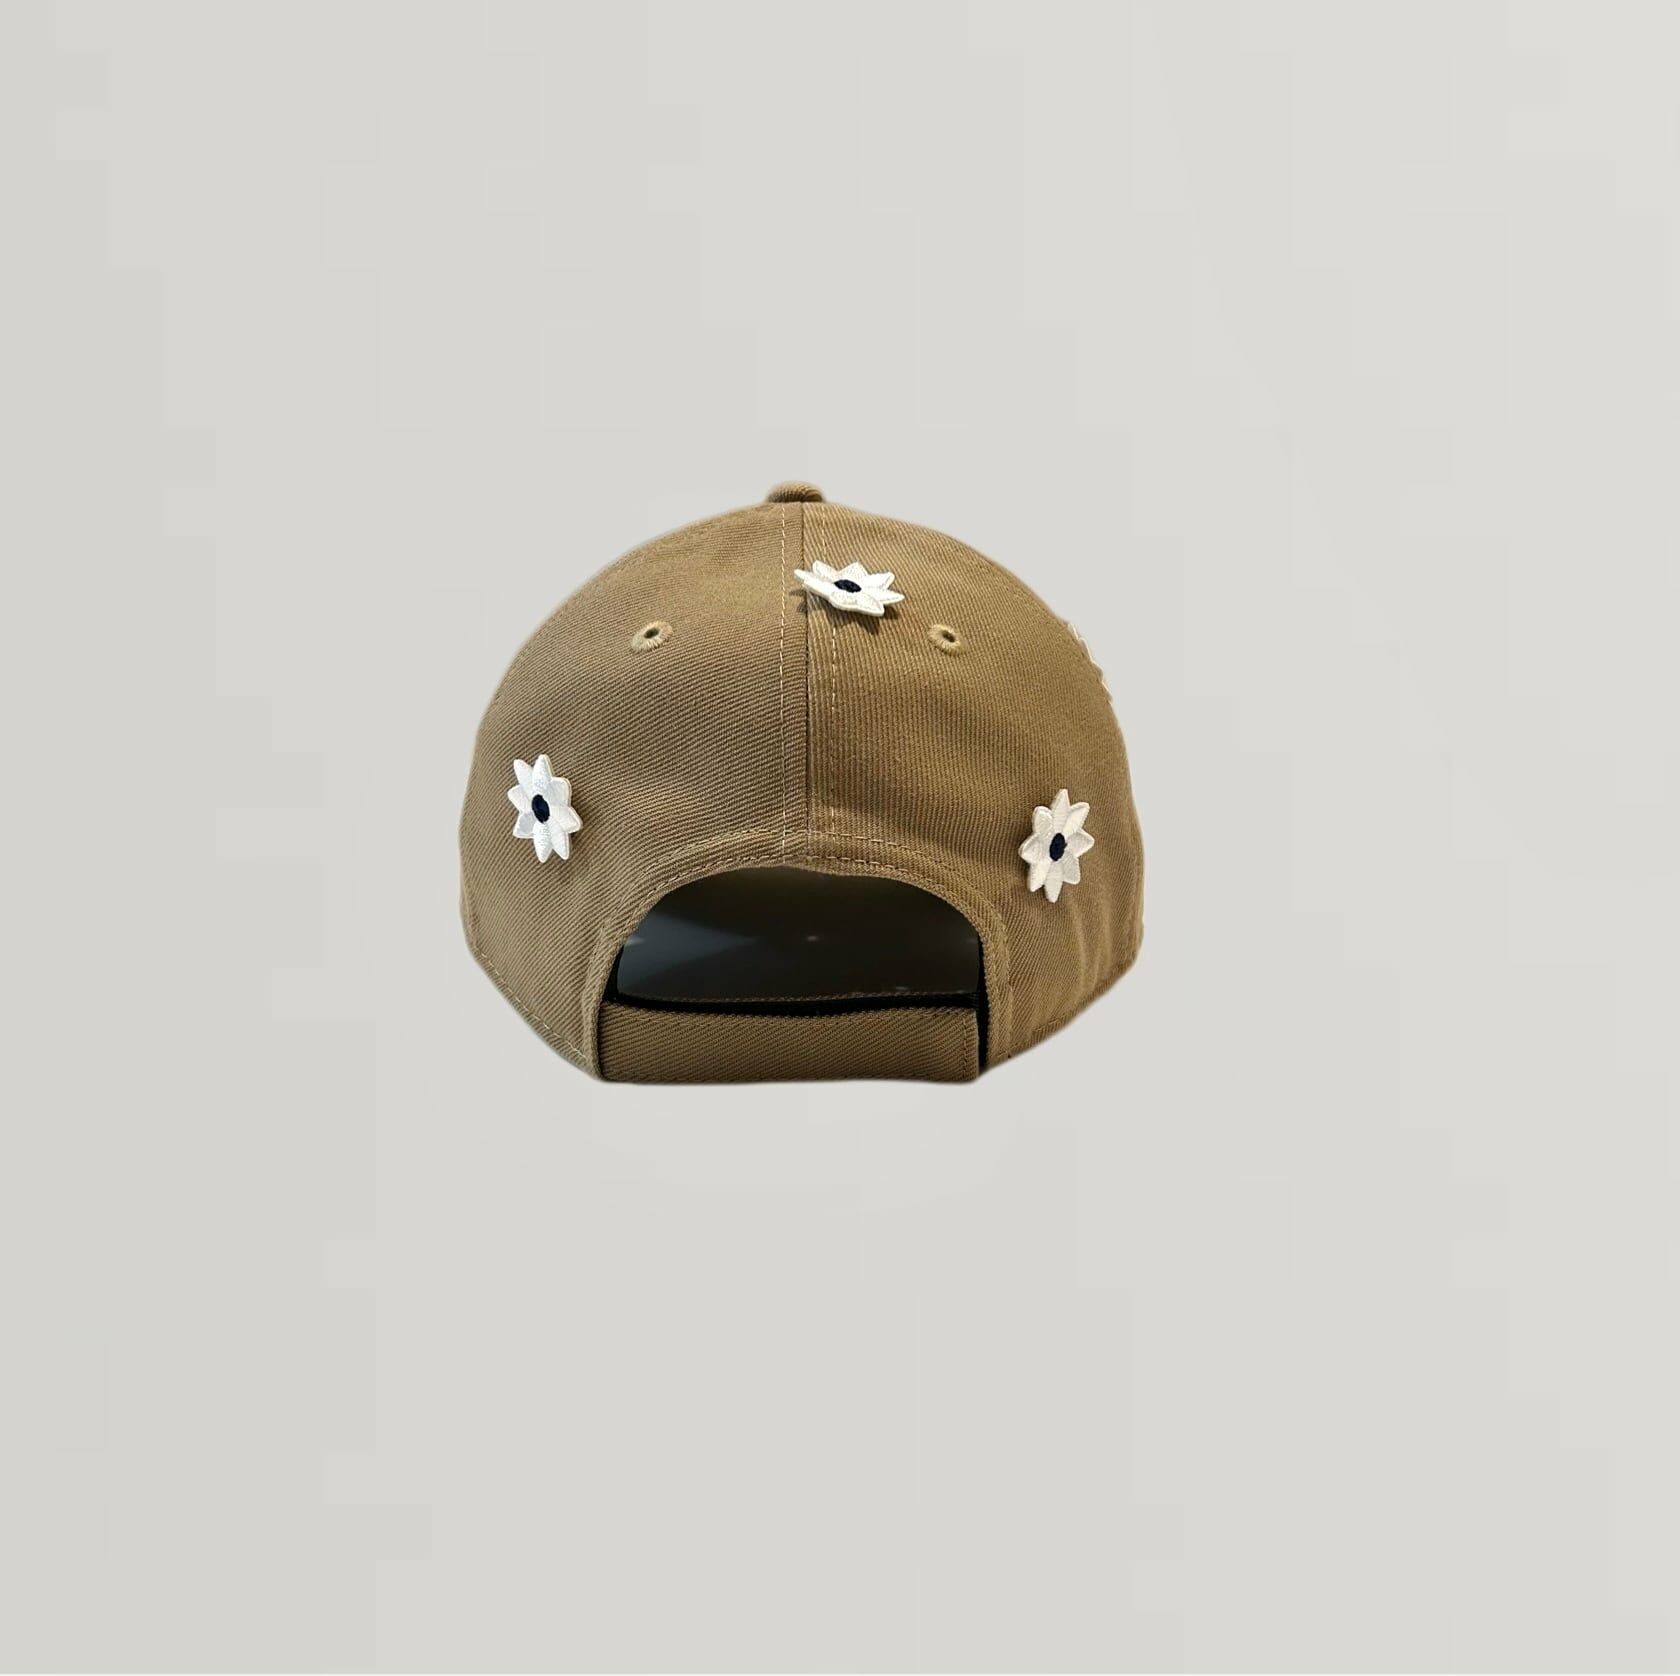 NICK GEAR 3D FLOWER CAP